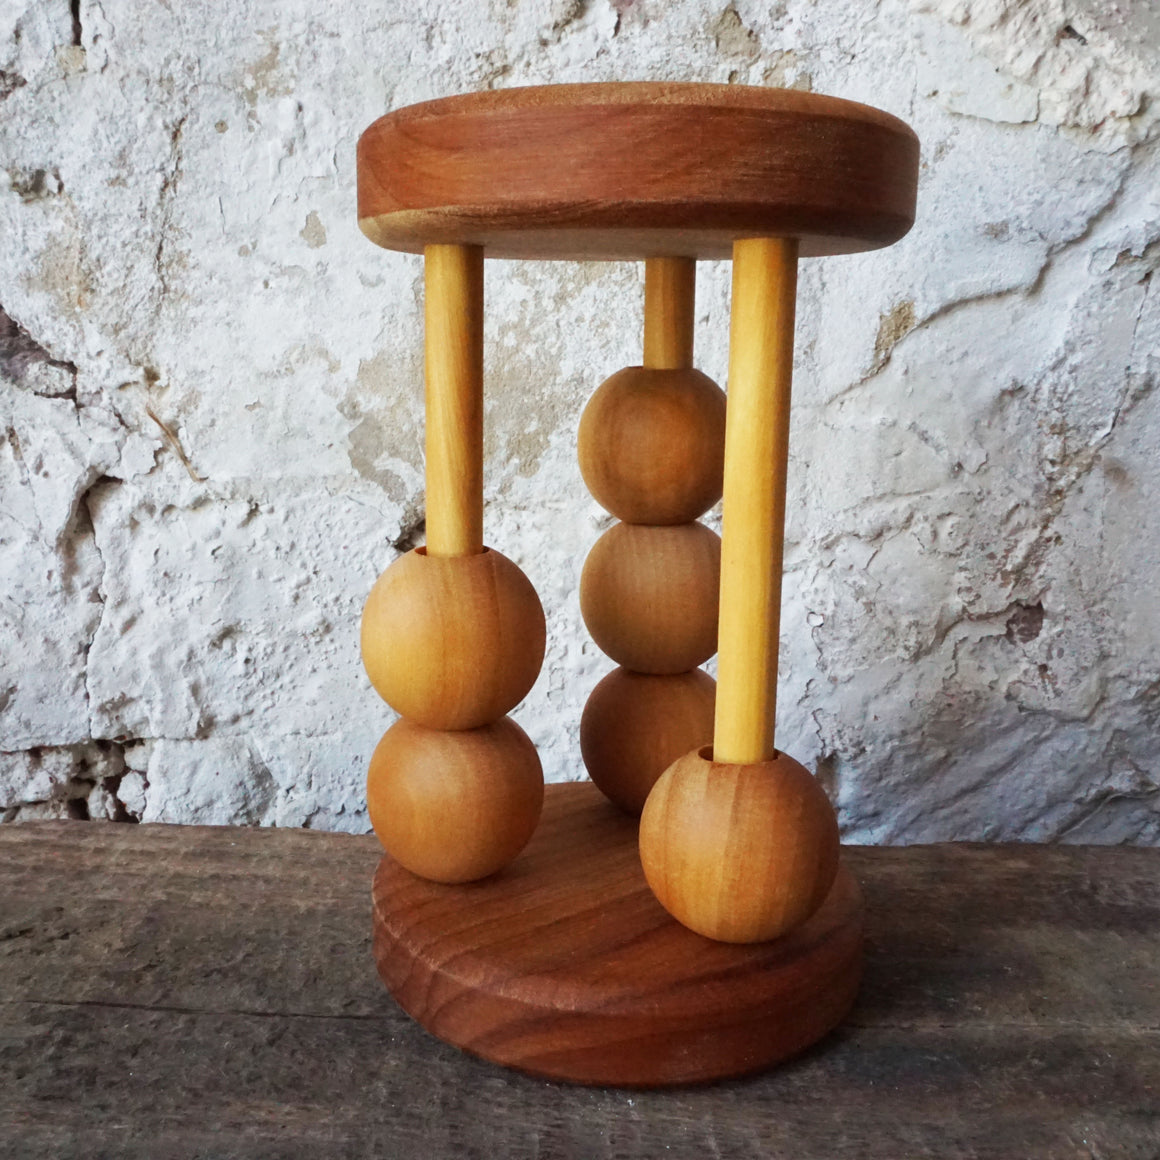 Wooden Clacker Rattle Round Balls